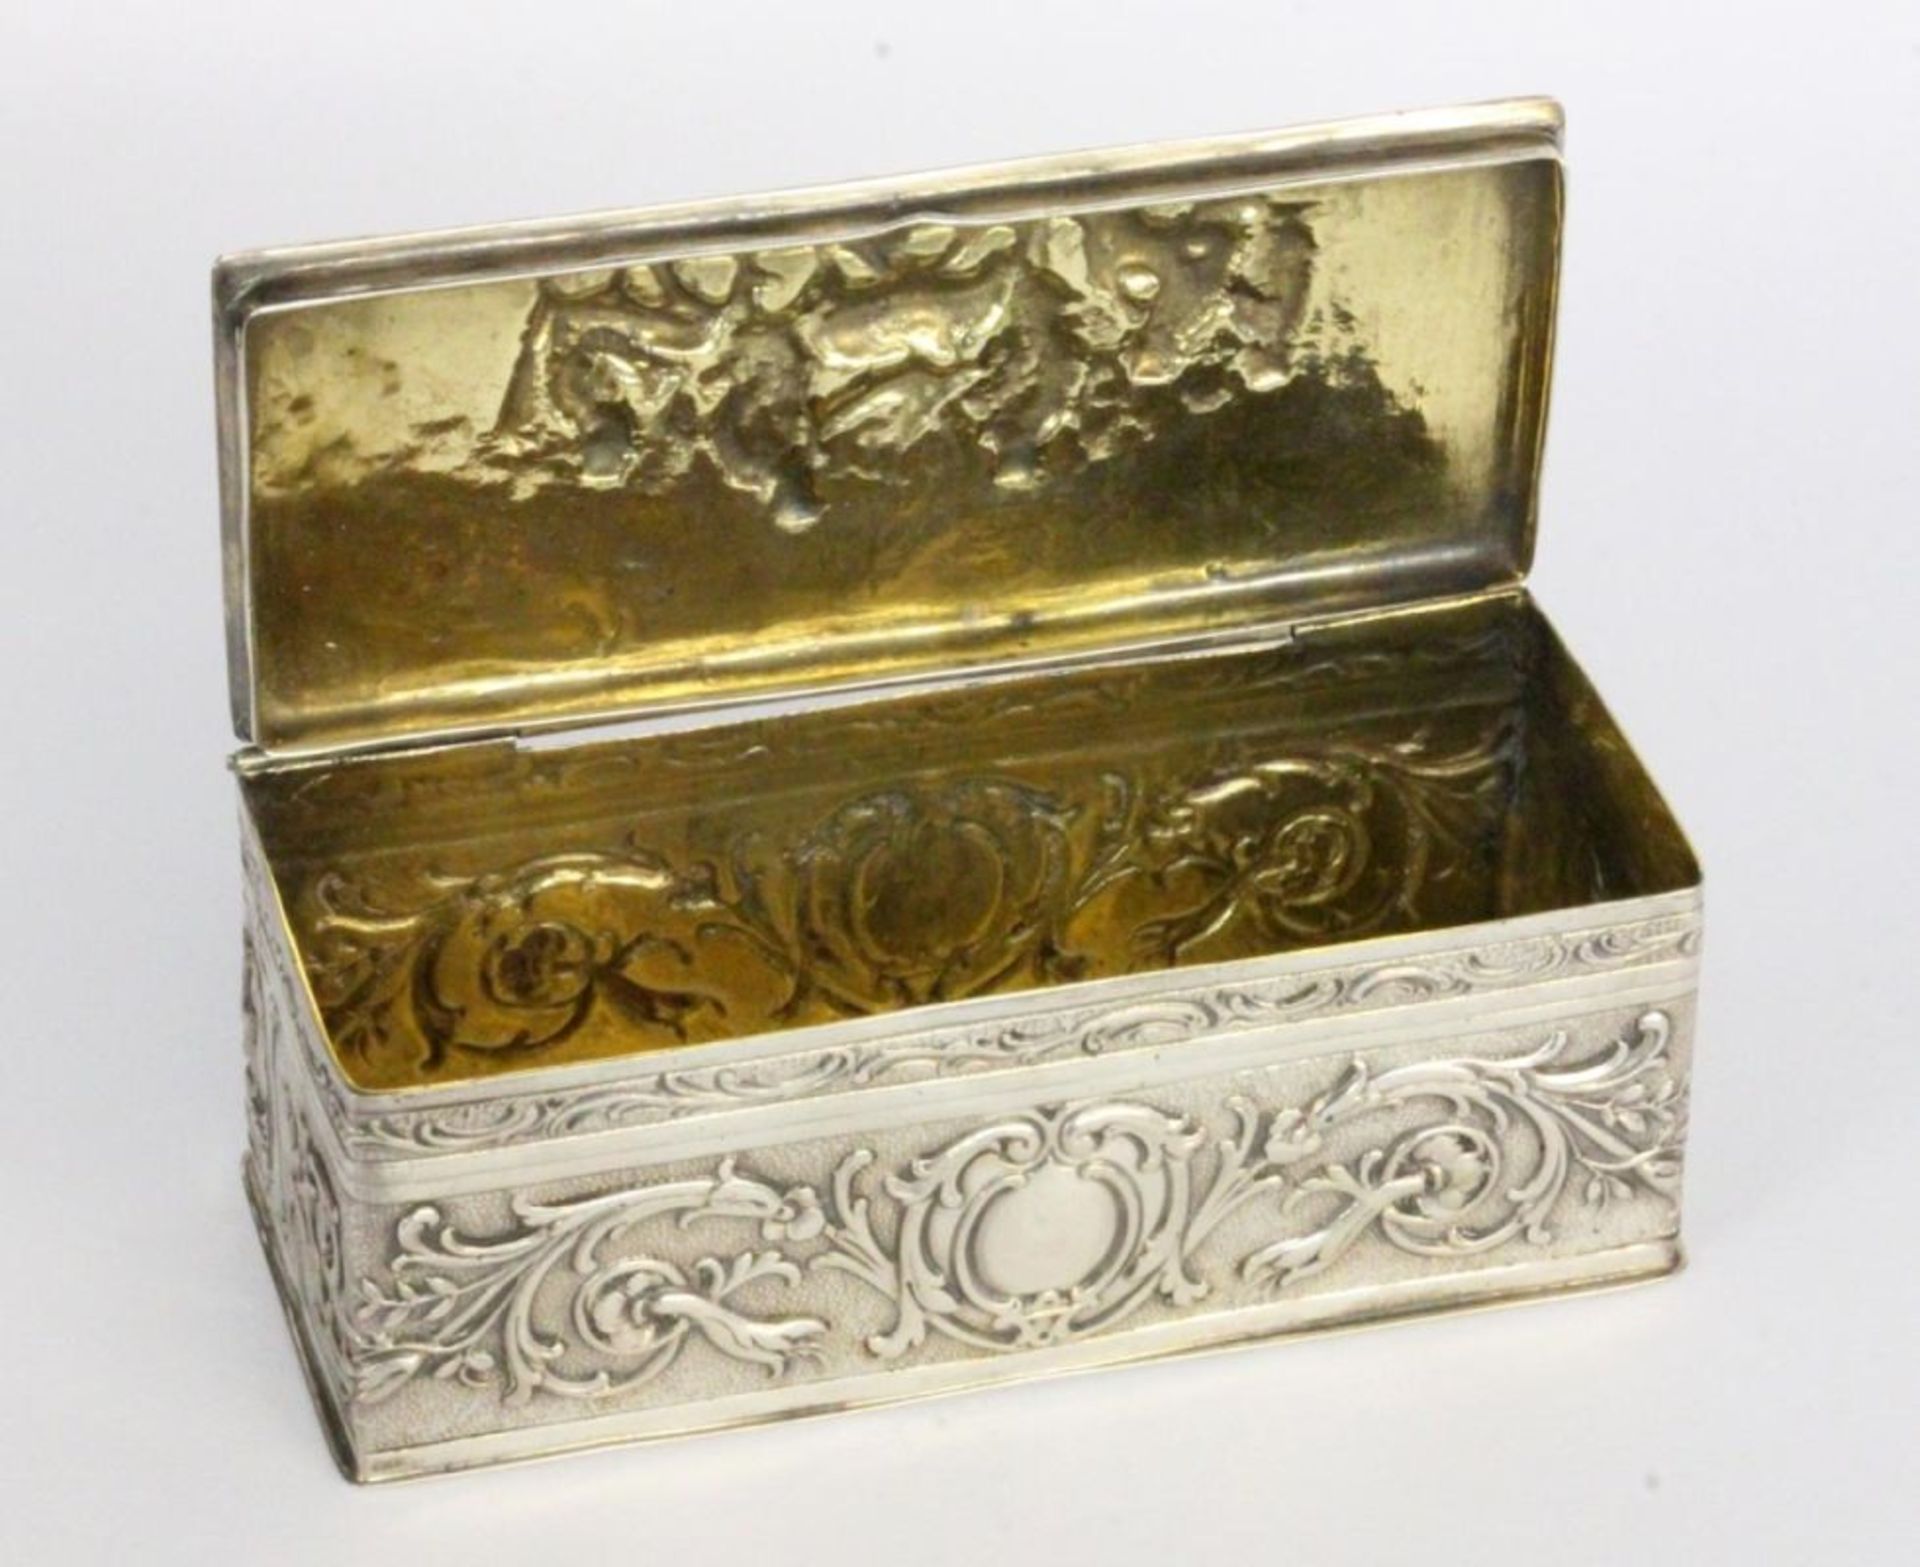 A SILVER TOBACCO BOX German circa 1900 800/000 silver with gilt interior. Rectangular - Bild 2 aus 2